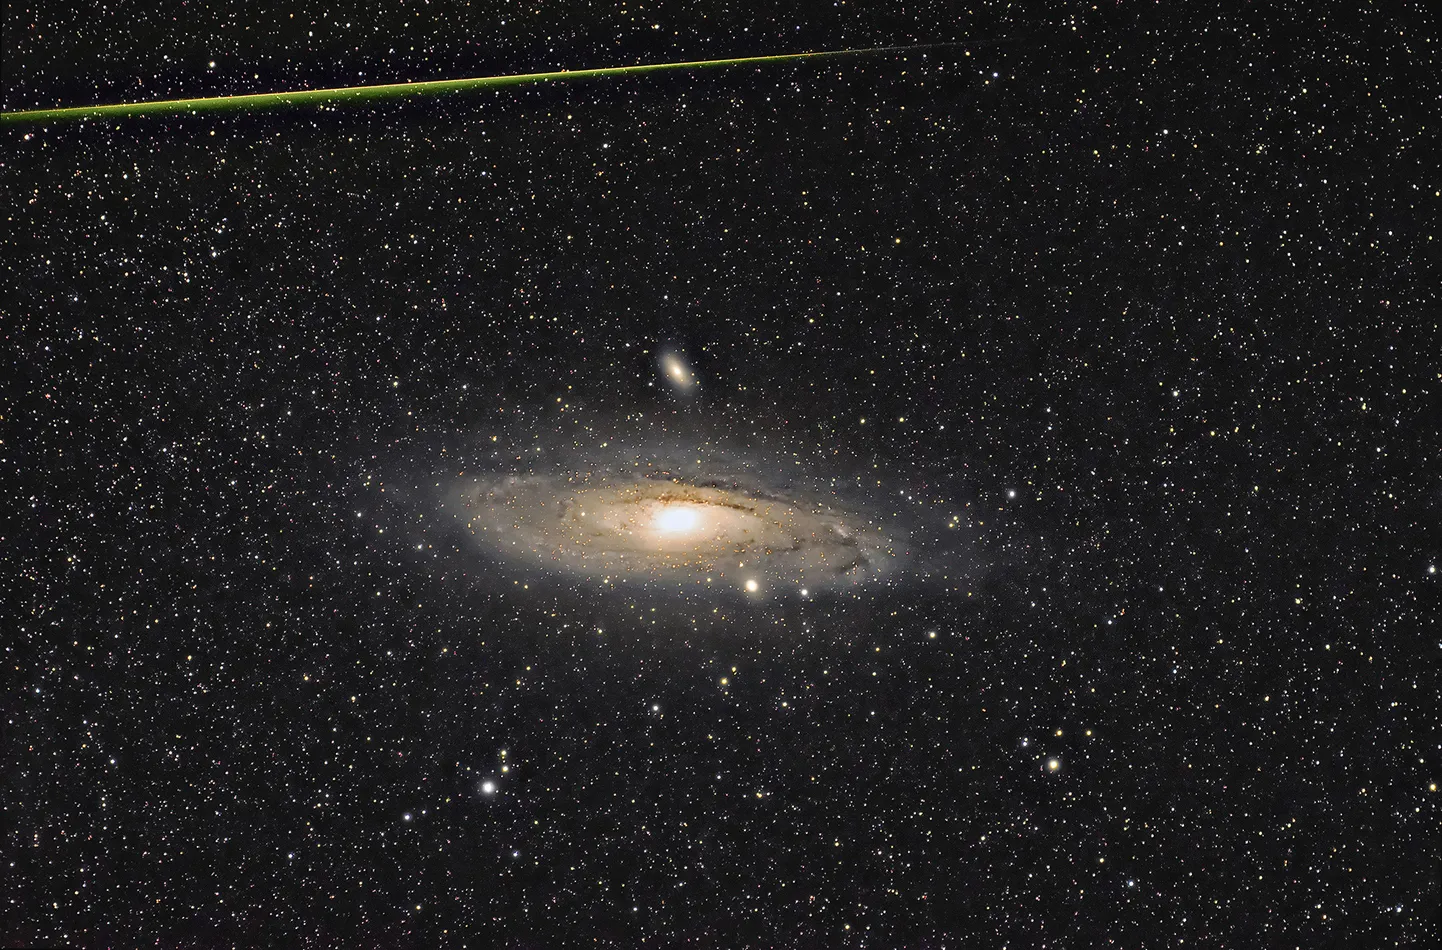 Andromeeda galaktika ja meteoor. Andromeeda galaktika (M31) koos oma satelliitgalaktikatega (M32 ja M110), pildistatud Soomaal 11-12.08.2019. Fotole on jäänud ka perseiidide meteoorivoolust pärinev meteoor (ülal).